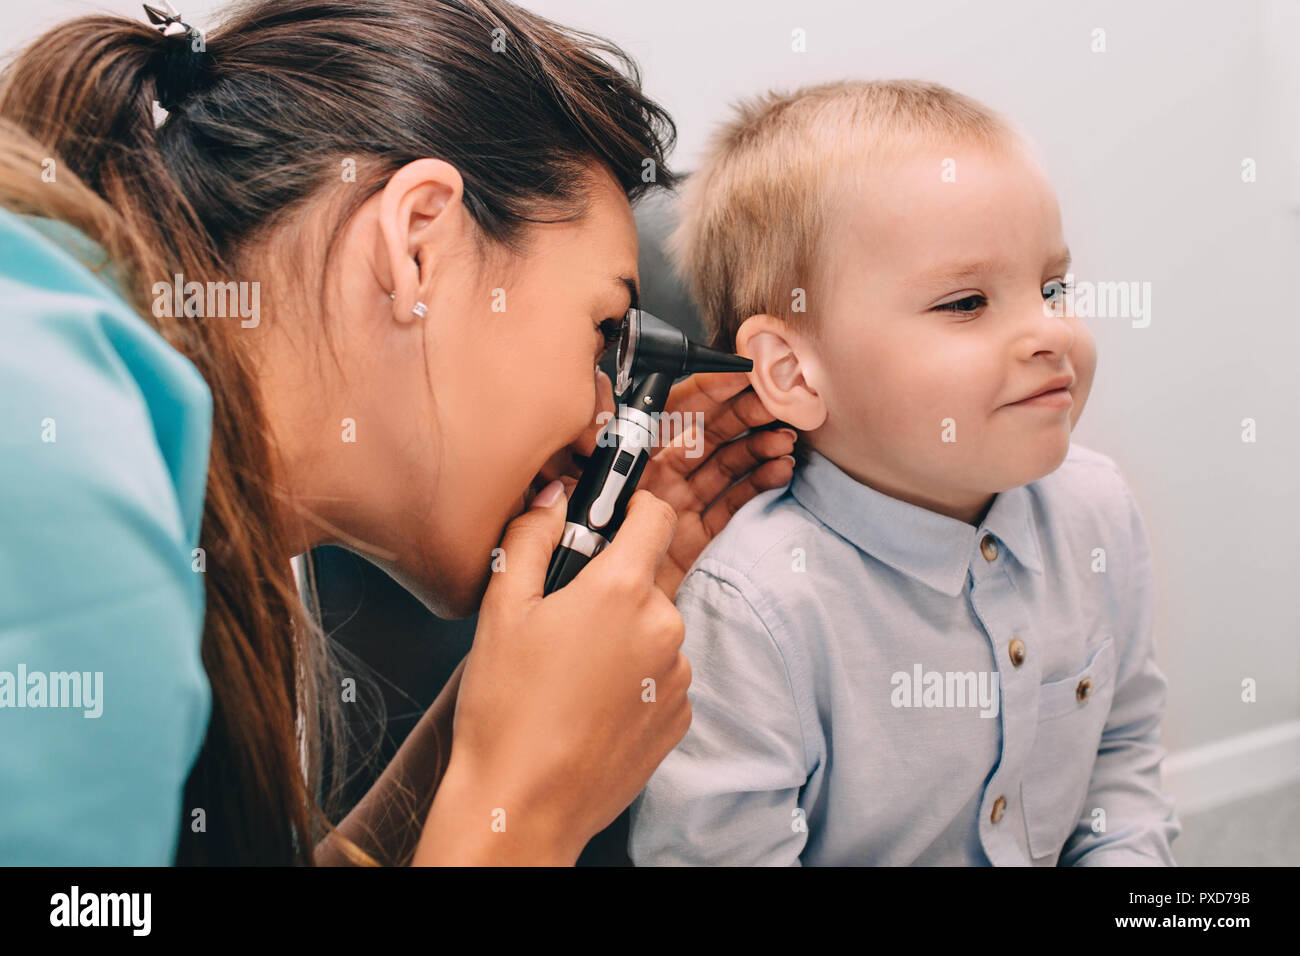 Niñito sonriente tras examen del oído con el otoscopio Foto de stock